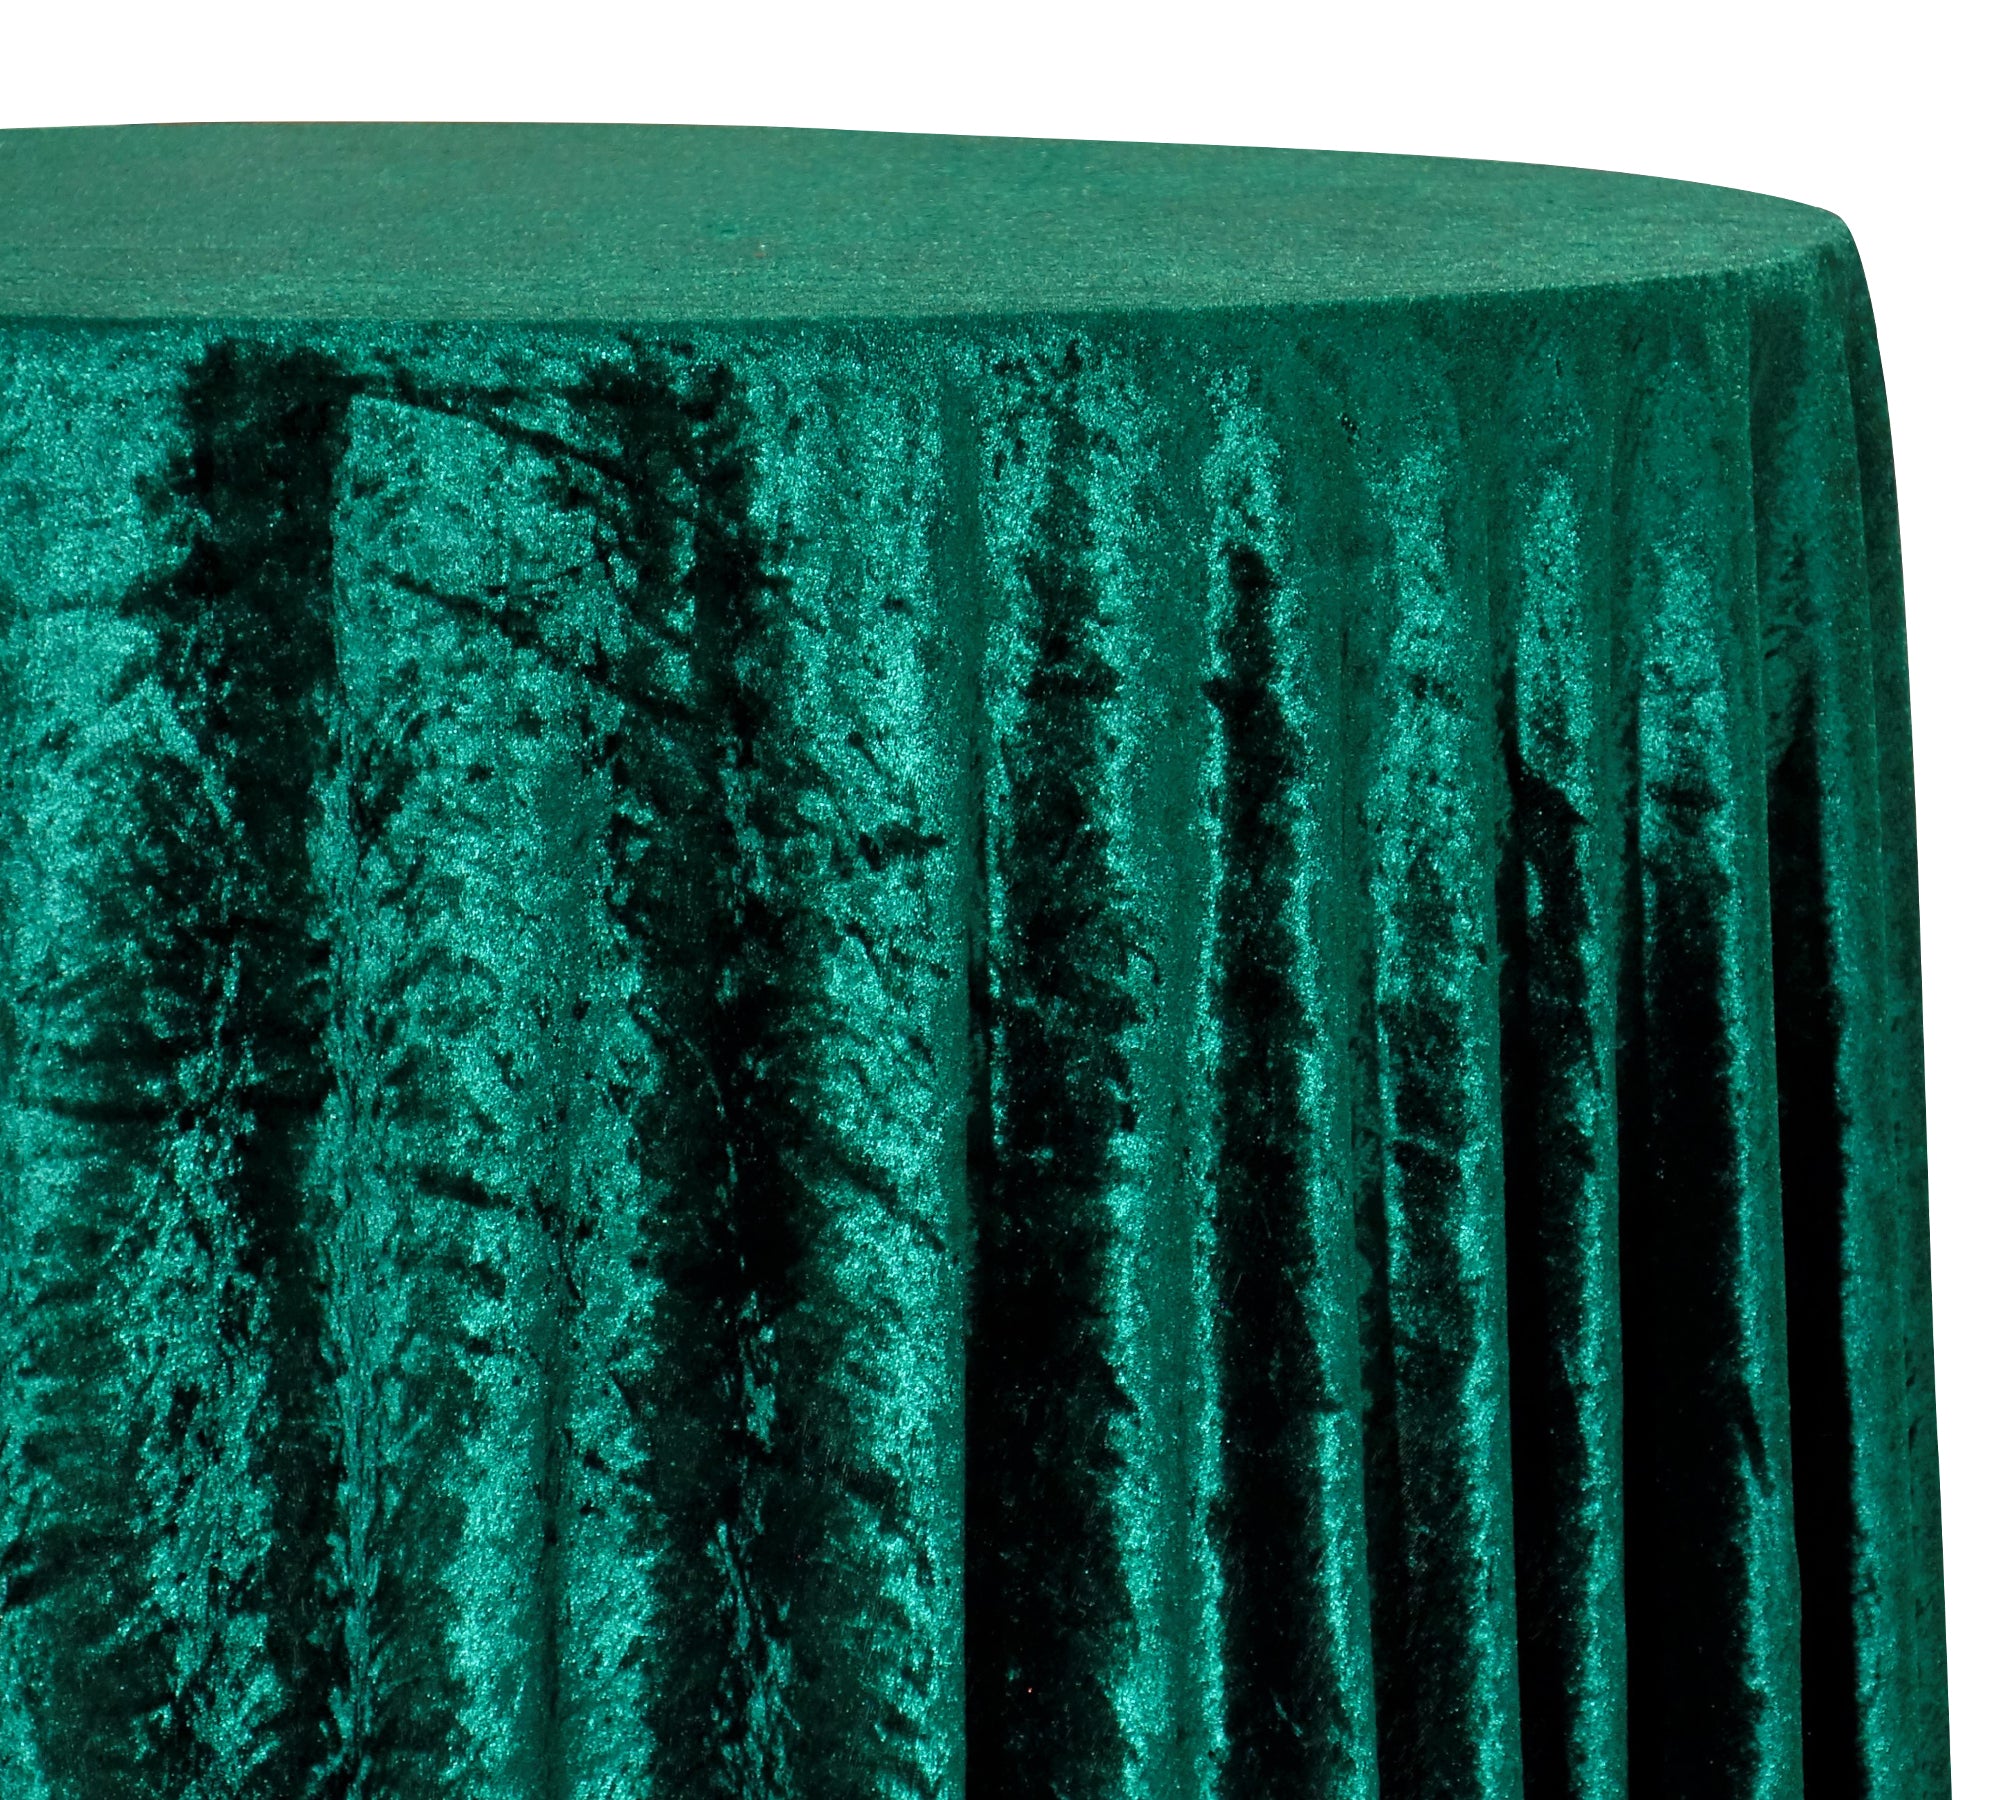 Panne (Crush) Velvet Table Linen in Hunter Green – Urquid Linen